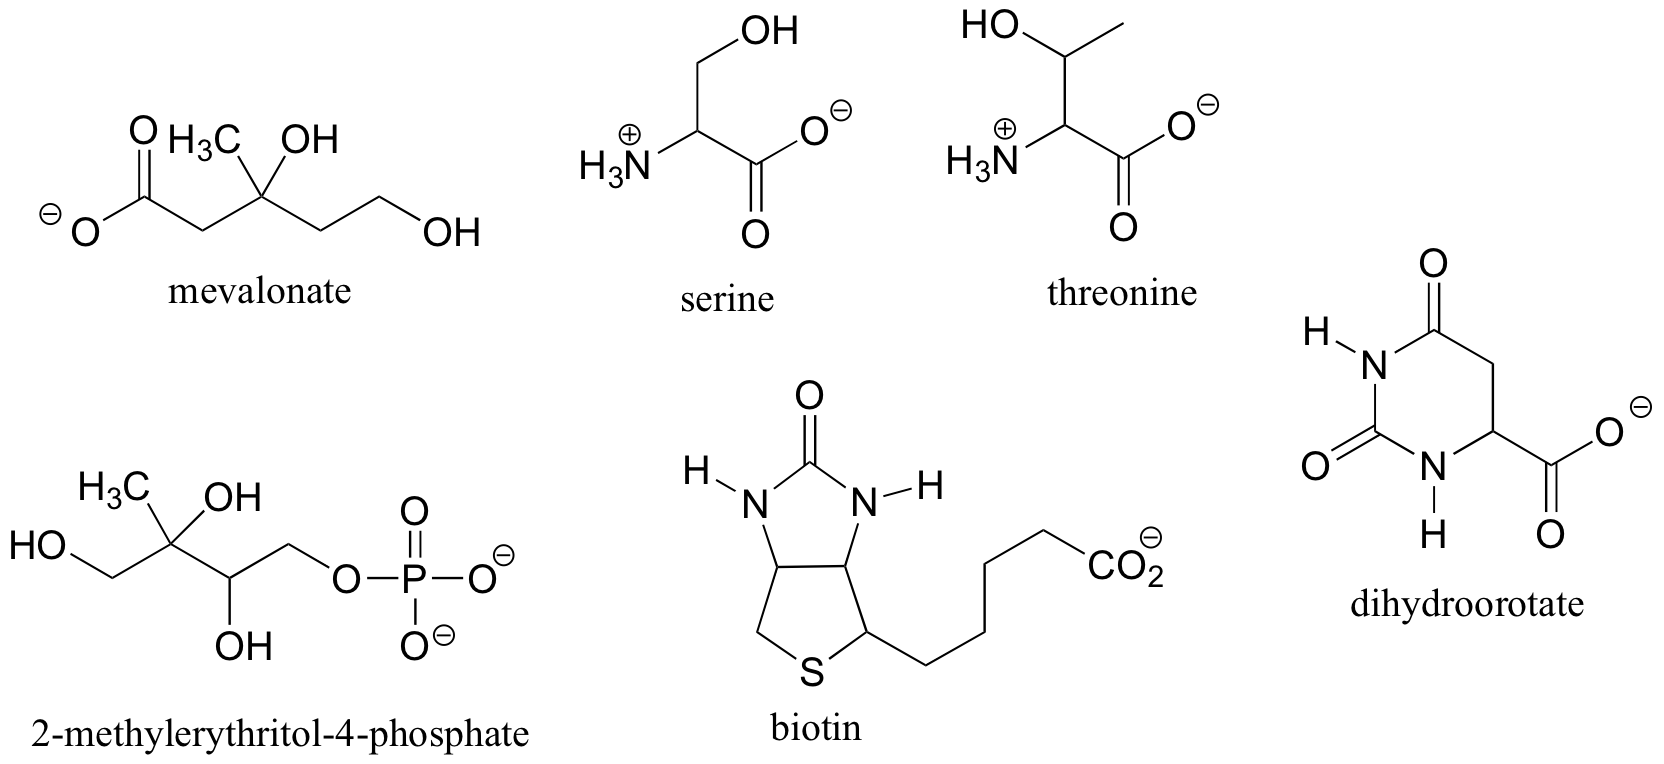 Moléculas de mevalonato, serina, treonina, 2-metileritritol-4-fosfato, biotina y dihidroorotato.